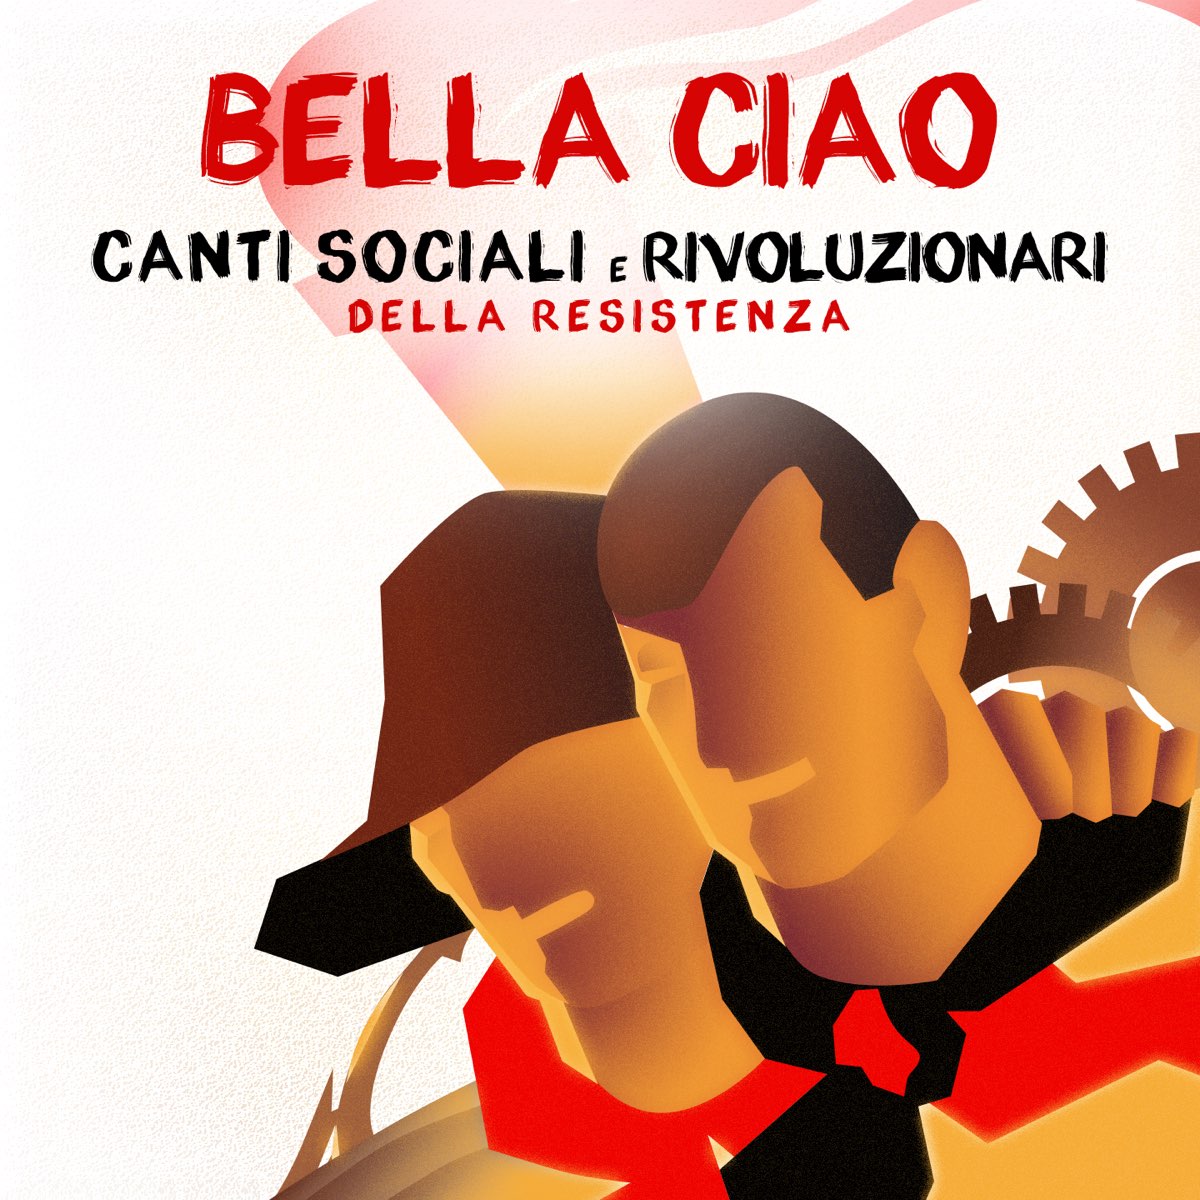 ‎Bella ciao (Canti sociali e rivoluzionari della resistenza) - Album by ...